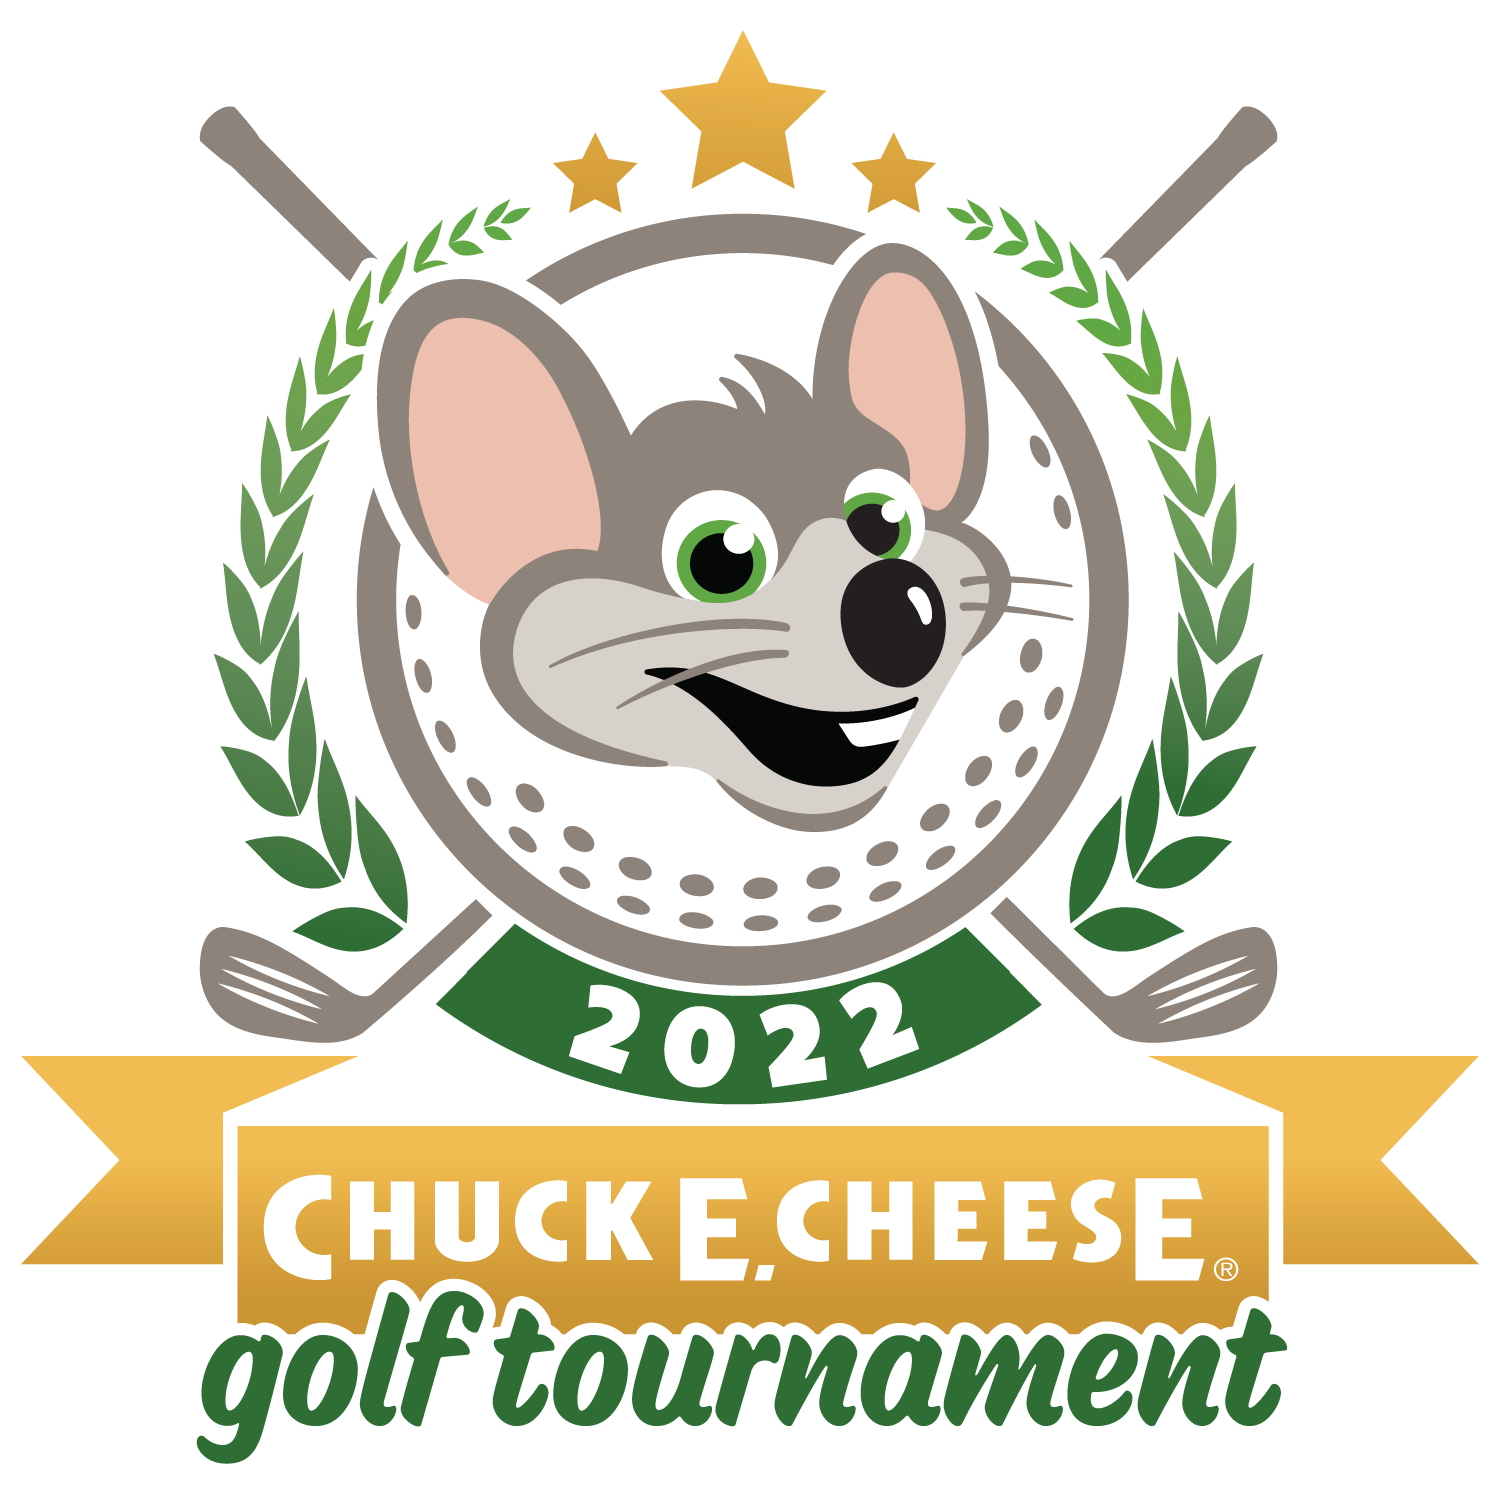 Chuck E. Cheese Charity Golf Tournament